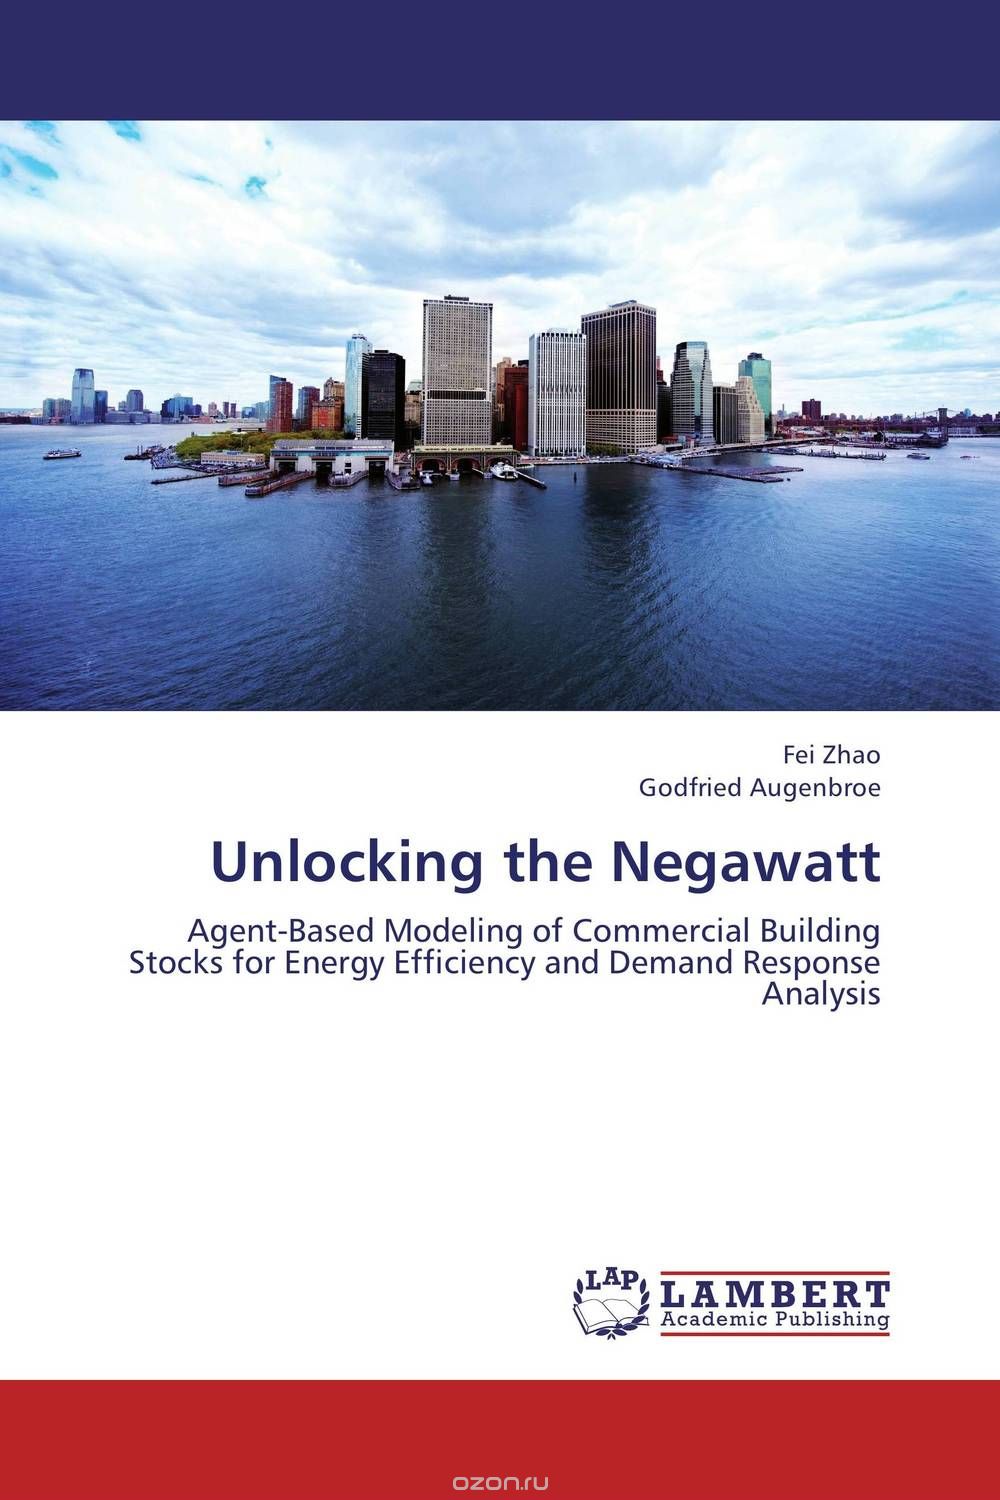 Скачать книгу "Unlocking the Negawatt"